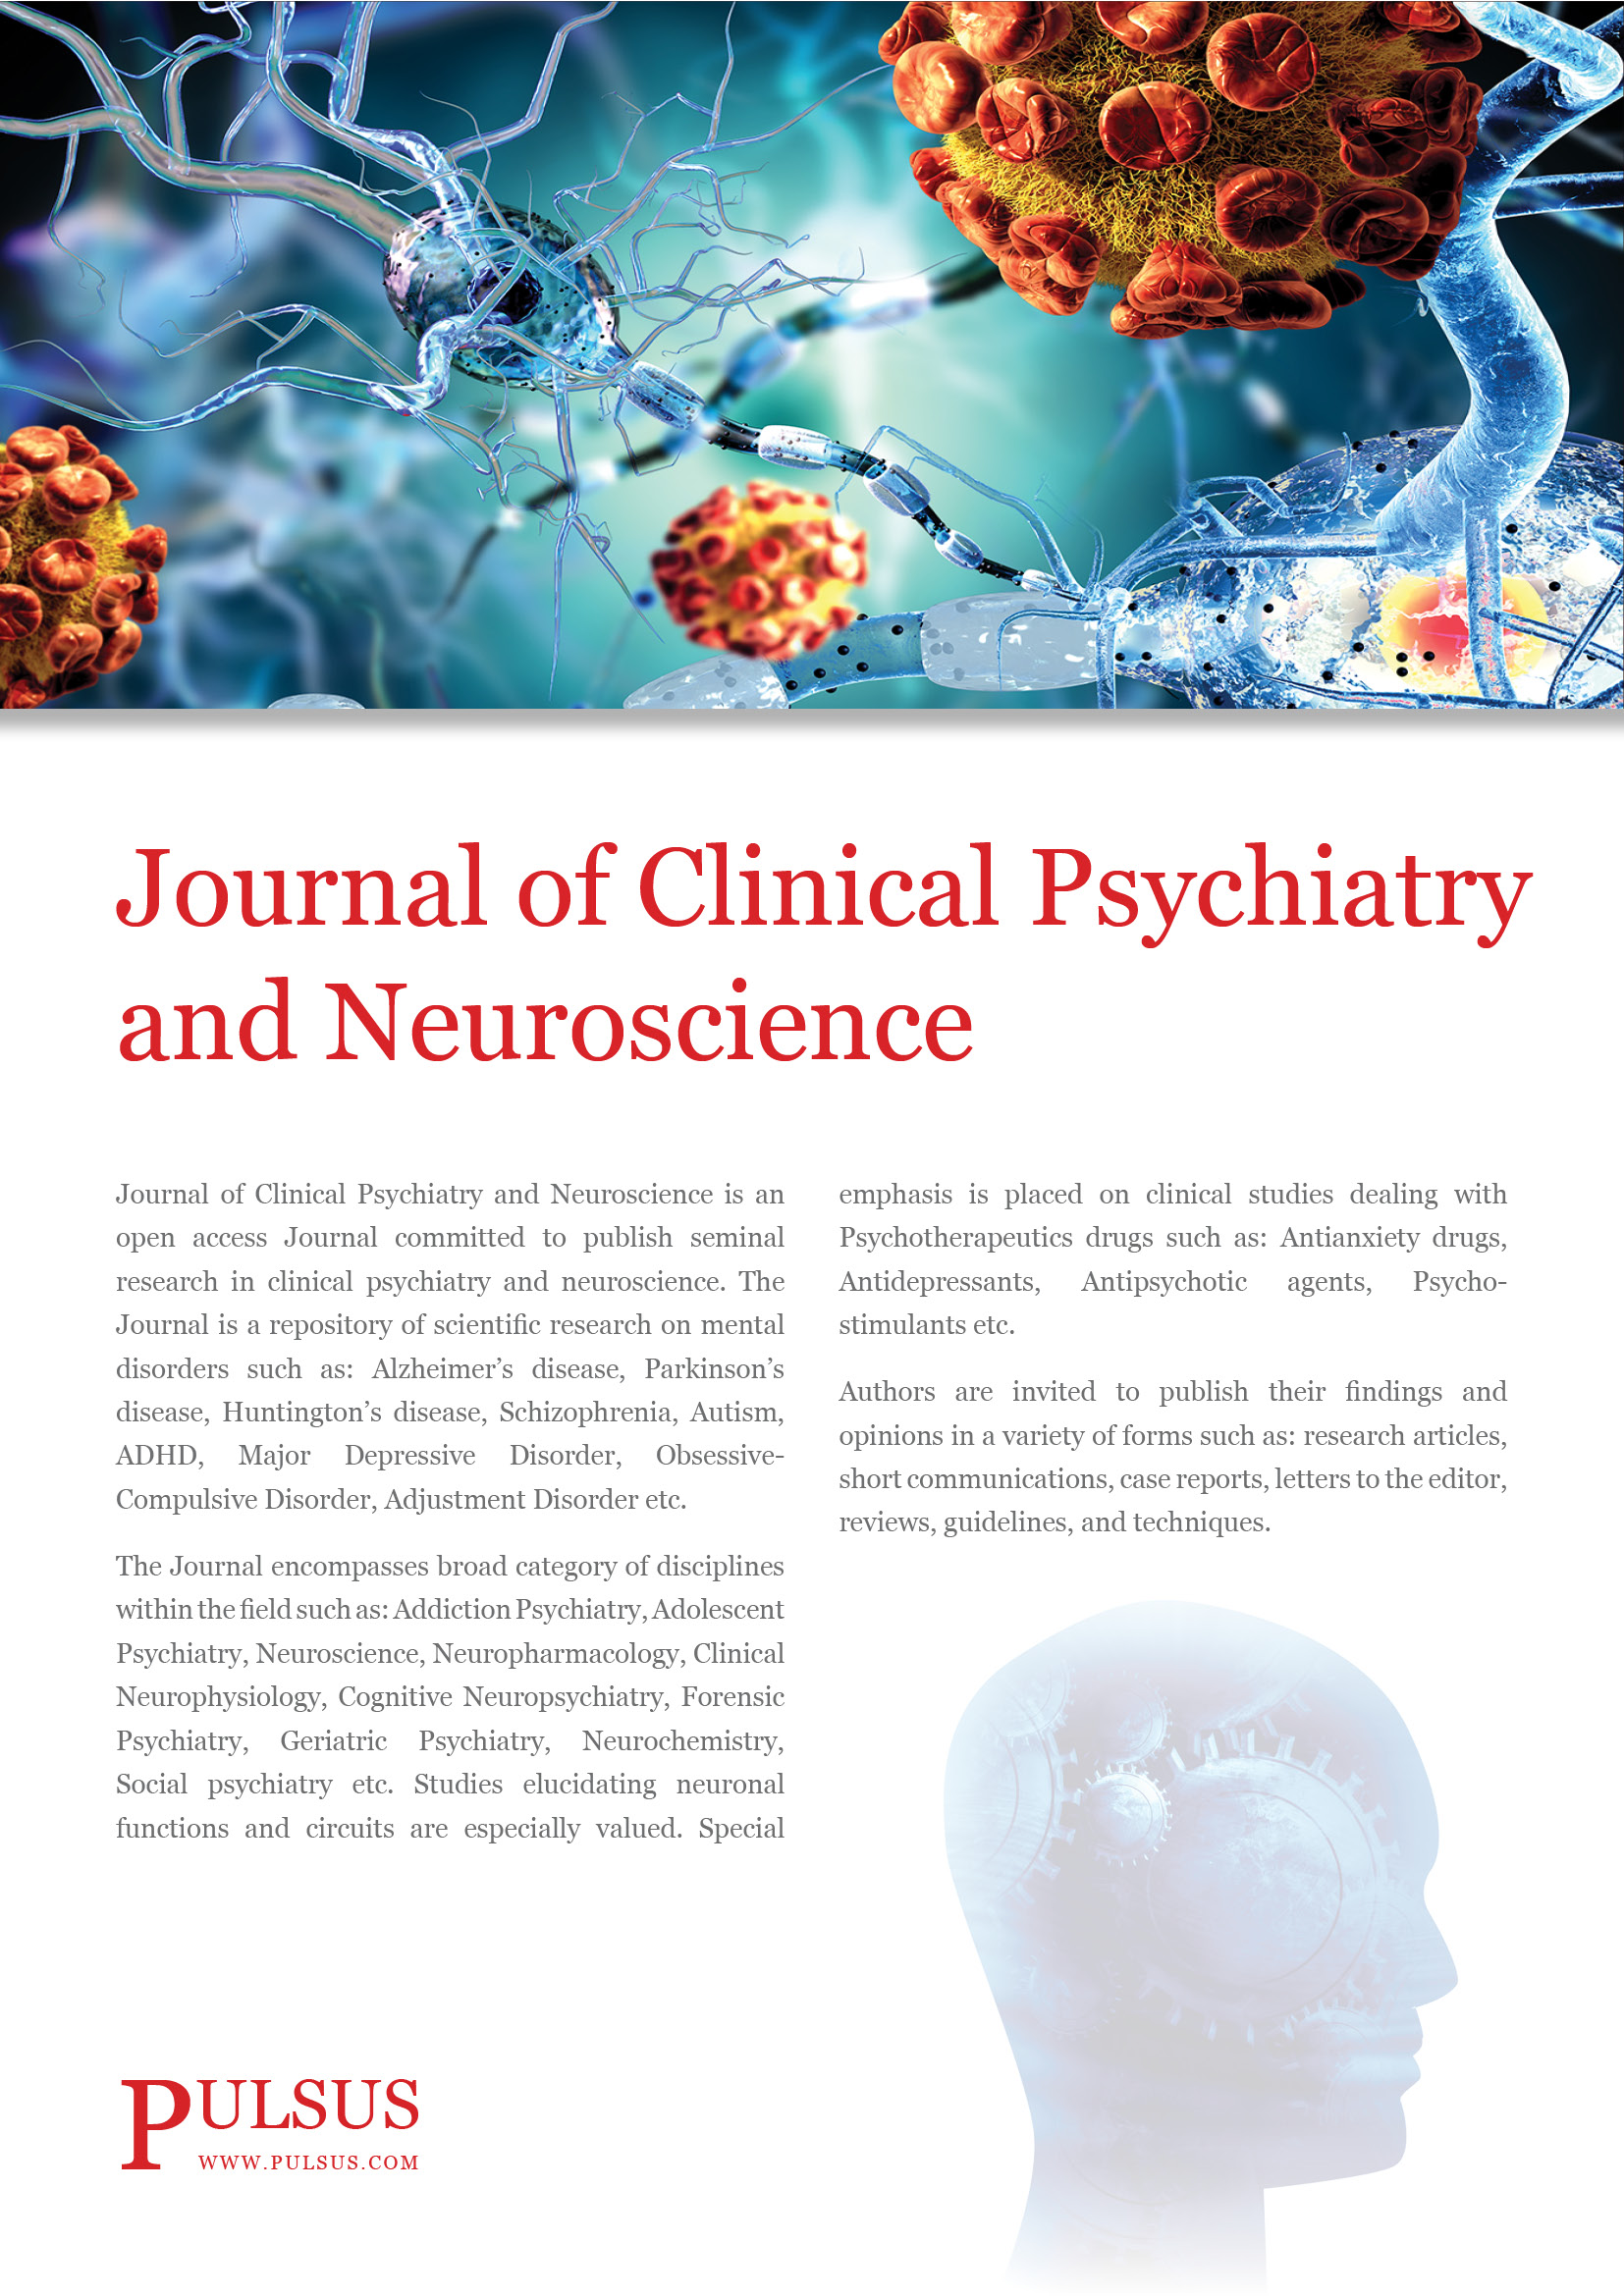 Revista de psiquiatría clínica y neurociencia